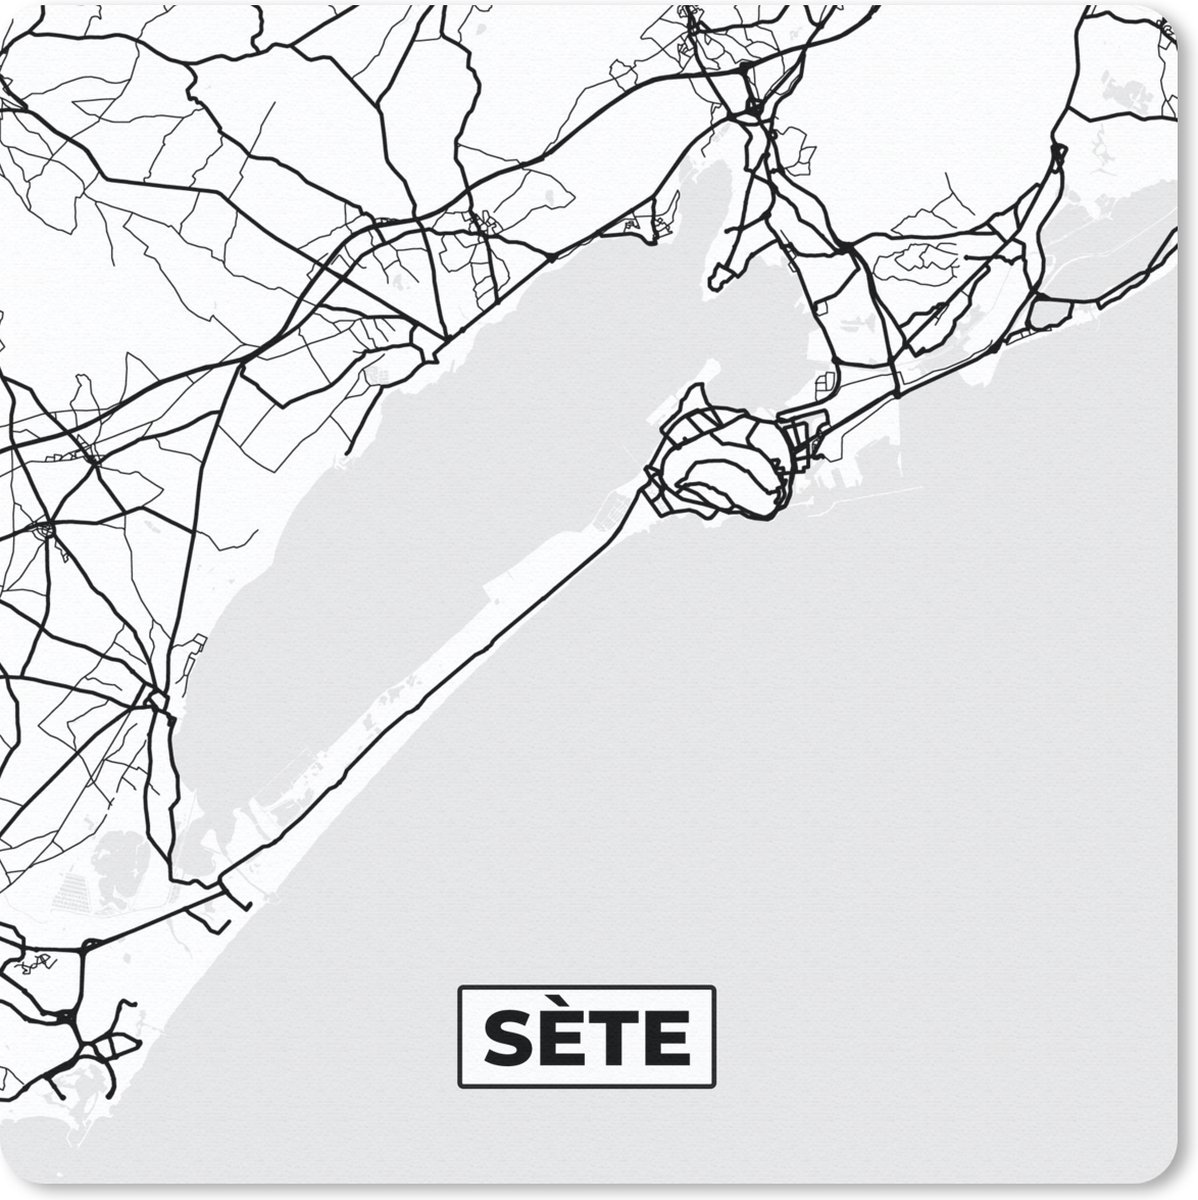 Muismat Klein - Plattegrond – Kaart – Sète - Frankrijk – Stadskaart - Zwart wit - 20x20 cm